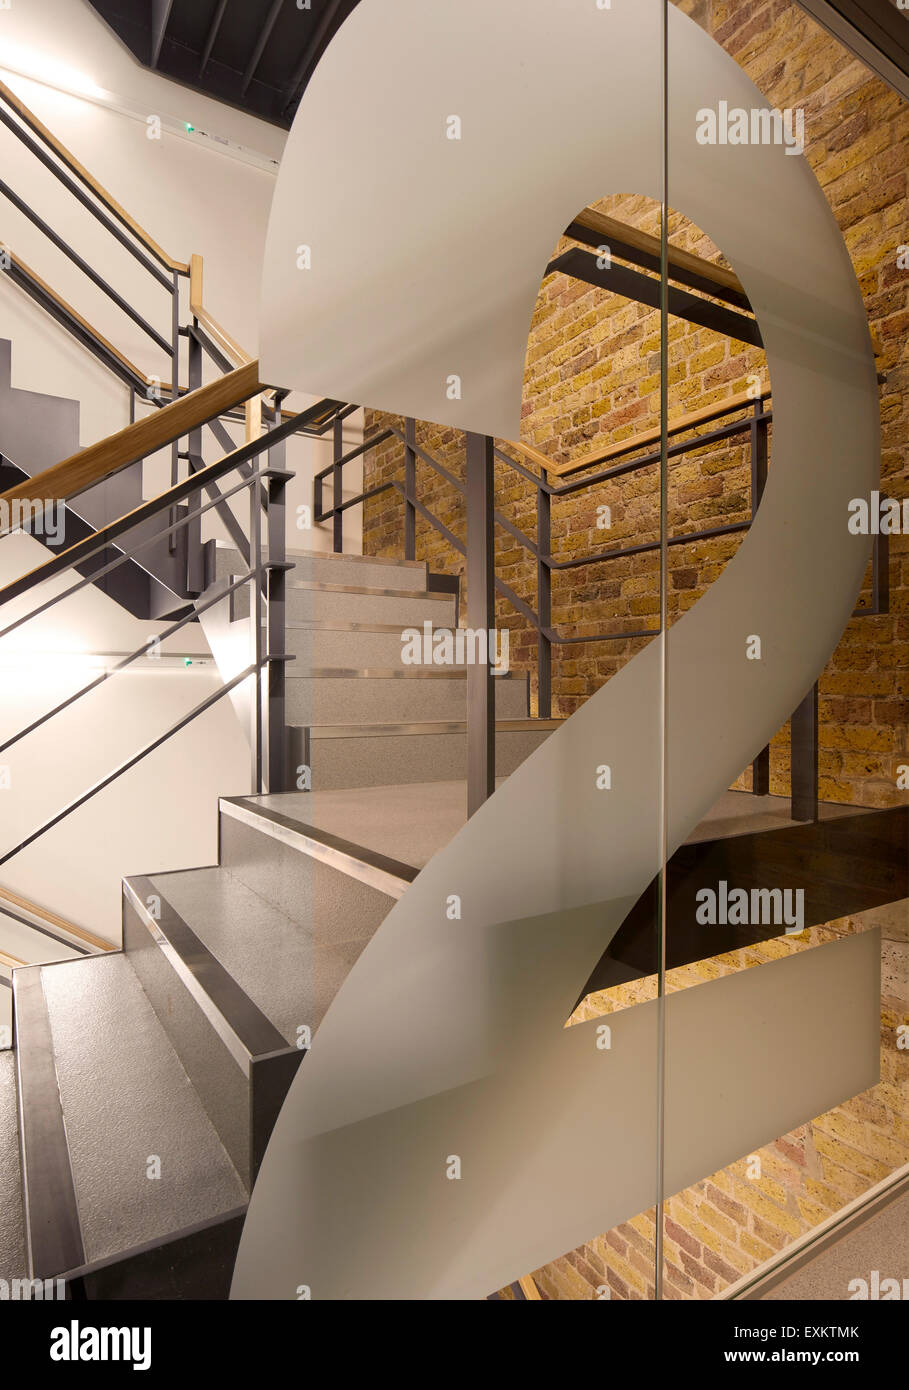 Treppe mit Podest. Königliche Hochschule der Augenärzte, London, Vereinigtes Königreich. Architekt: Bennetts Associates Architects, 20 Stockfoto